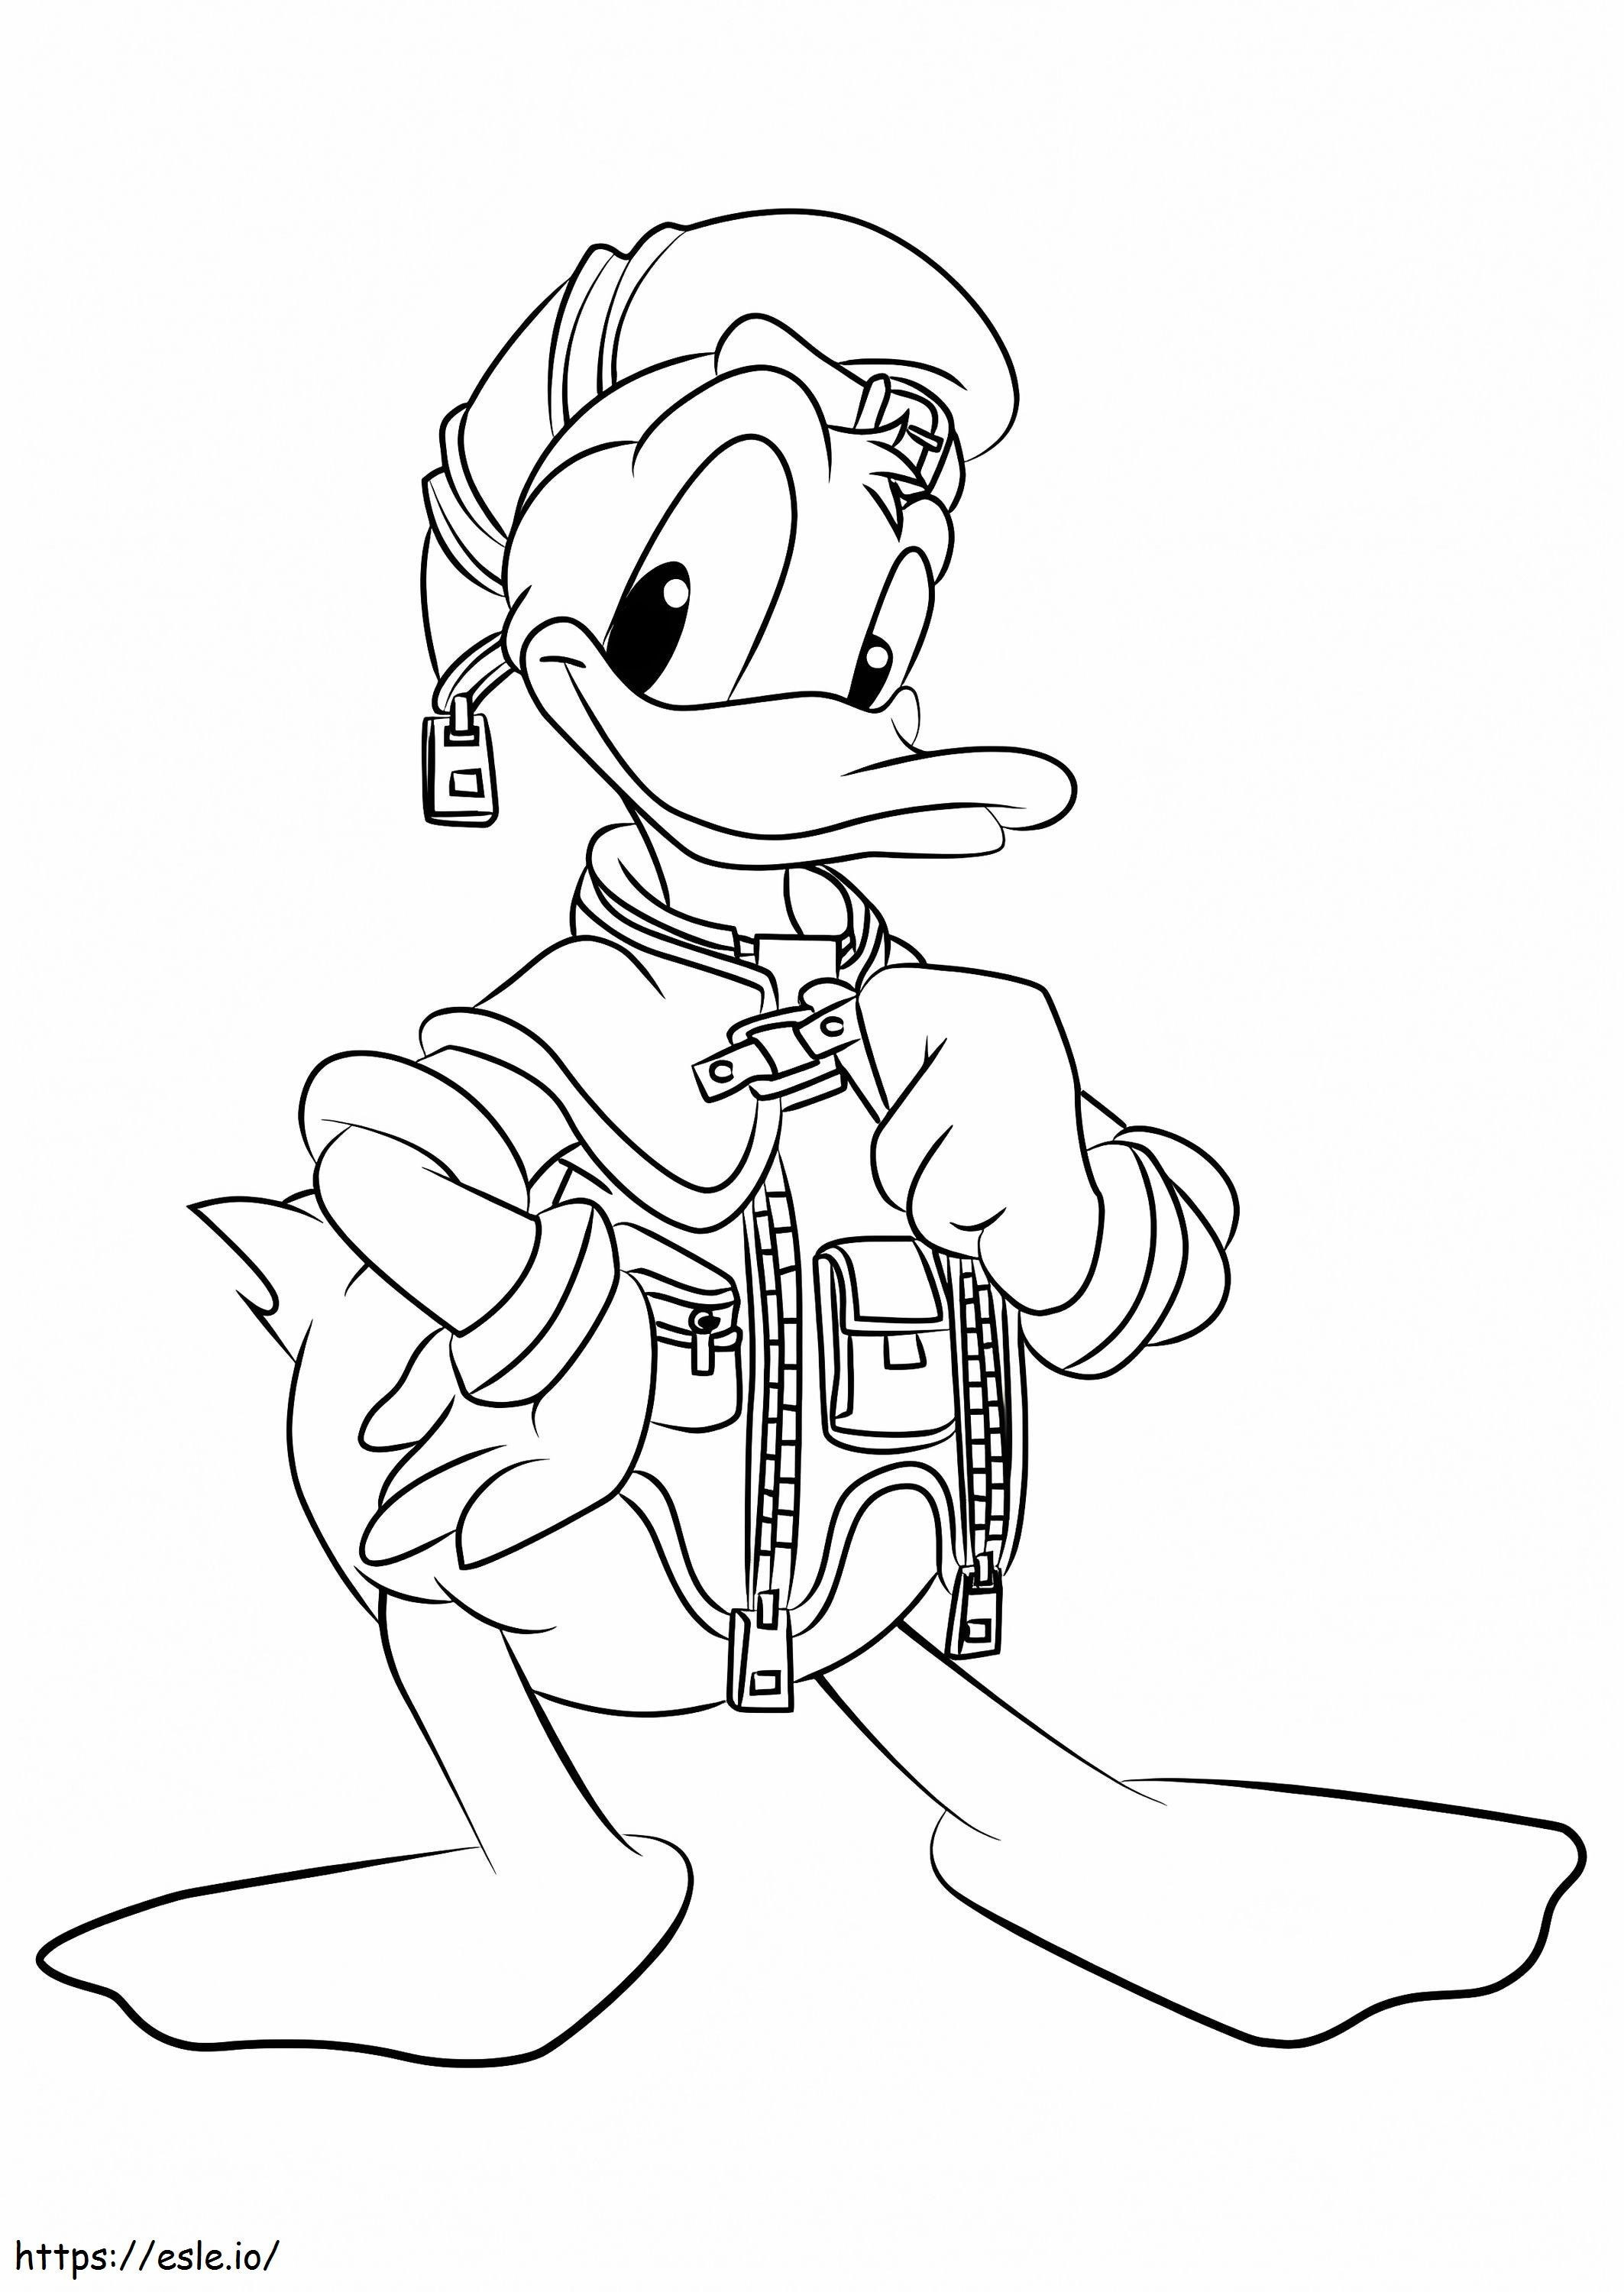 Donald Duck aus Kingdom Hearts ausmalbilder